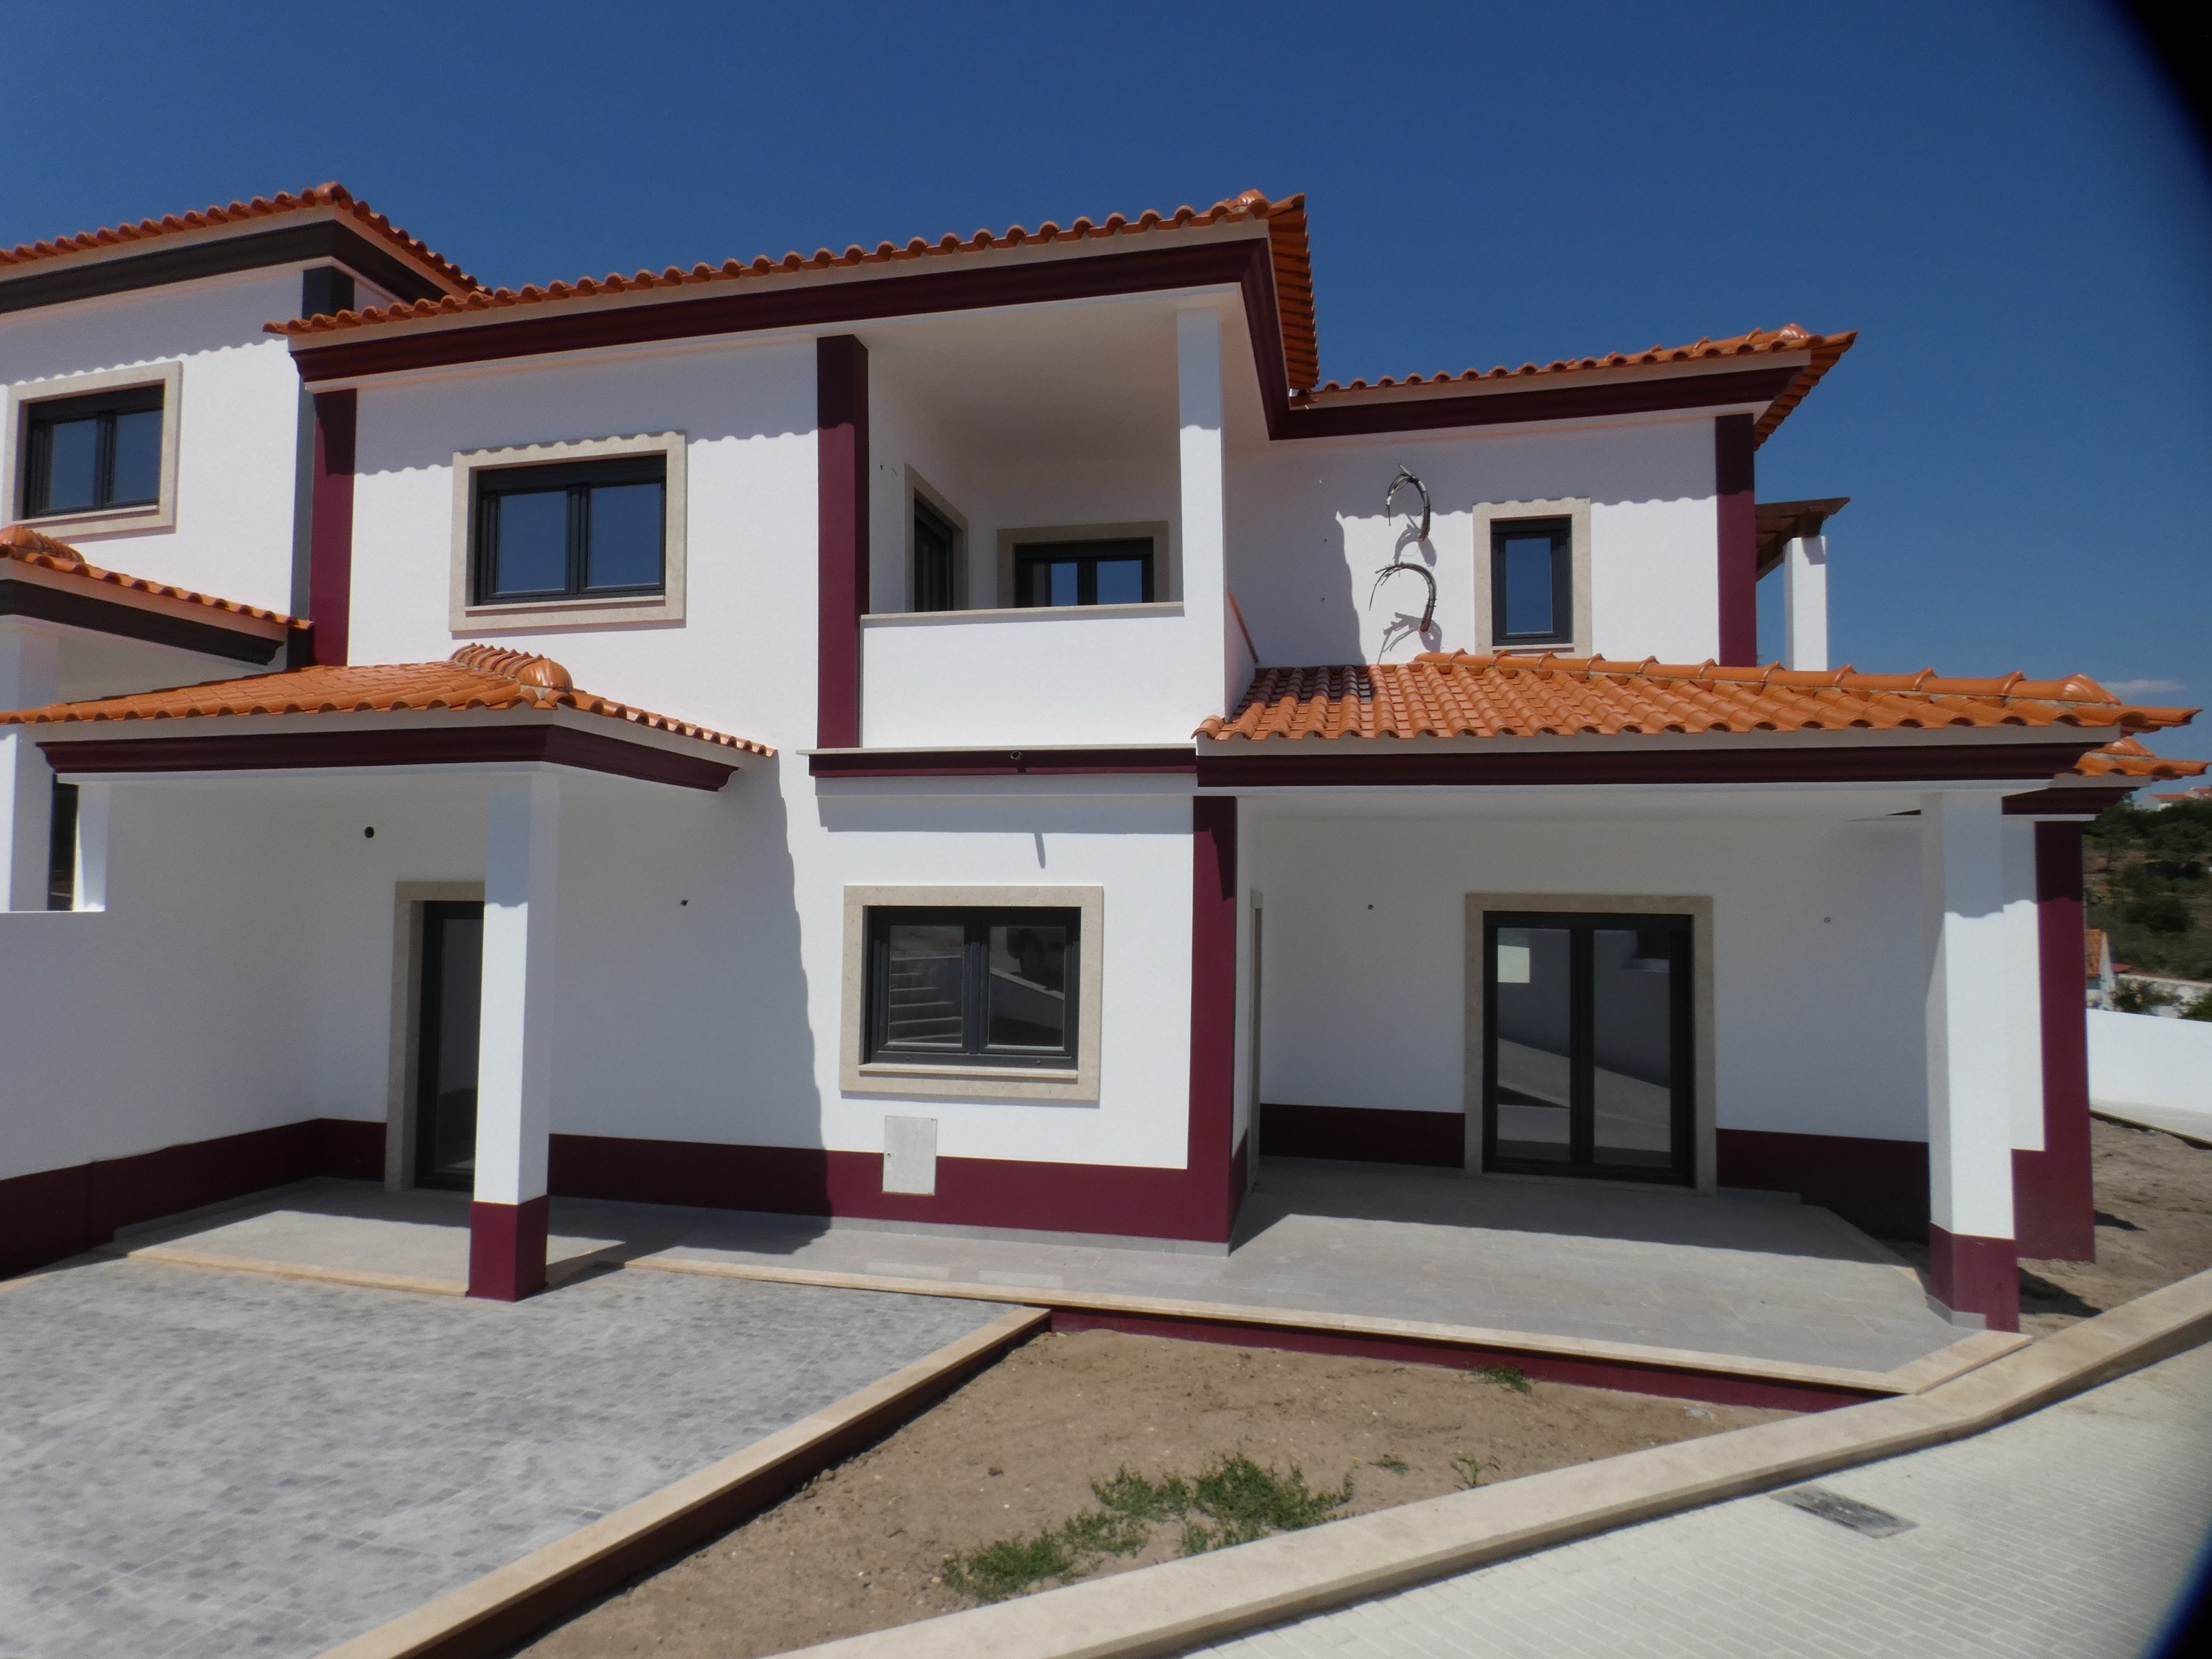 House for sale in Caldas Da Rainha, Silver Coast, Portugal 2120111090